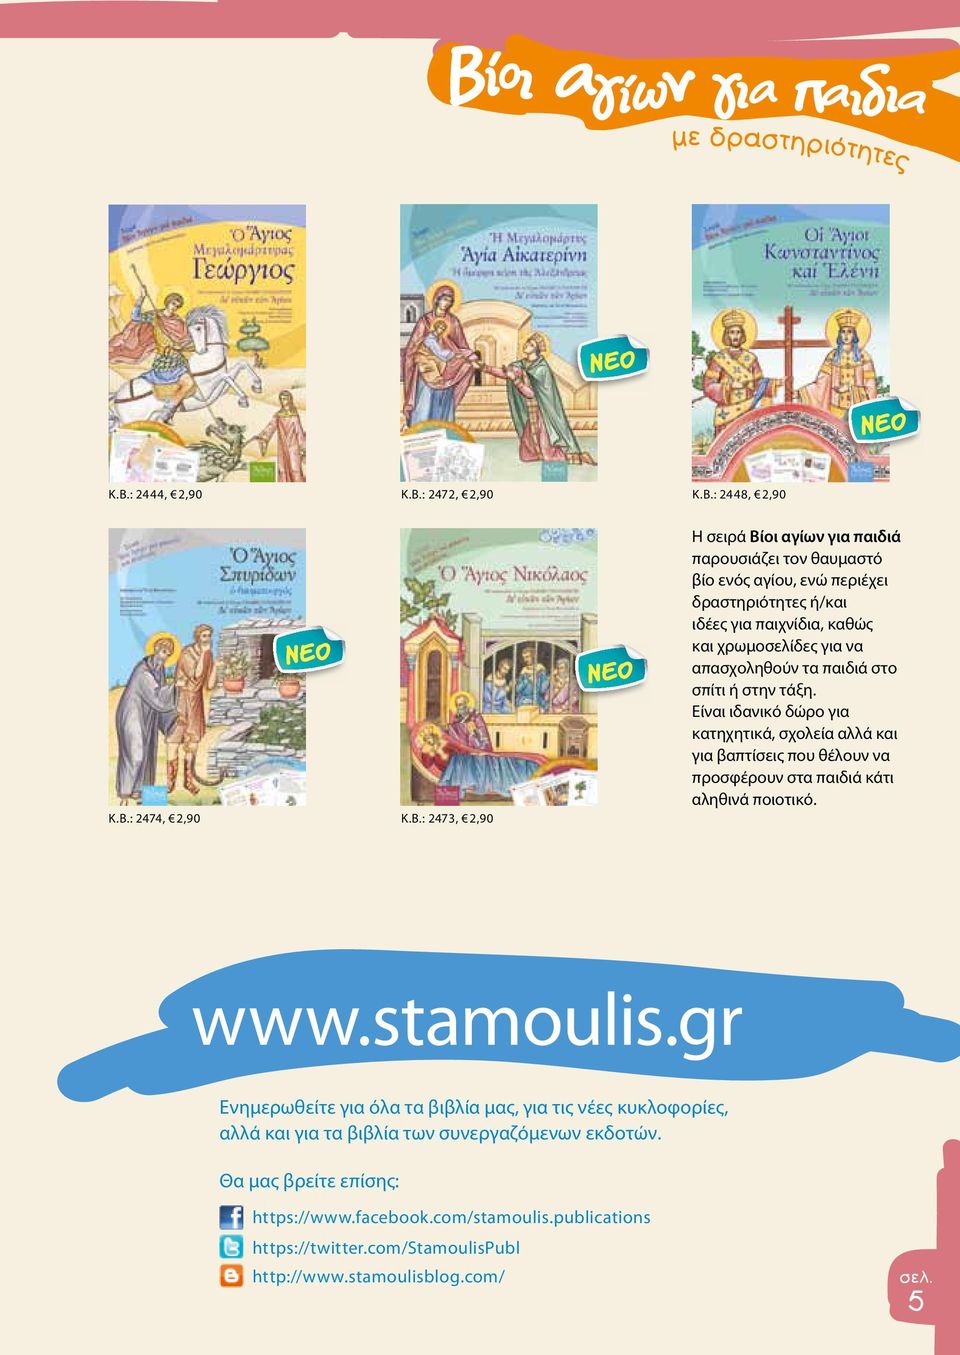 Είναι ιδανικό δώρο για κατηχητικά, σχολεία αλλά και για βαπτίσεις που θέλουν να προσφέρουν στα παιδιά κάτι αληθινά ποιοτικό. www.stamoulis.